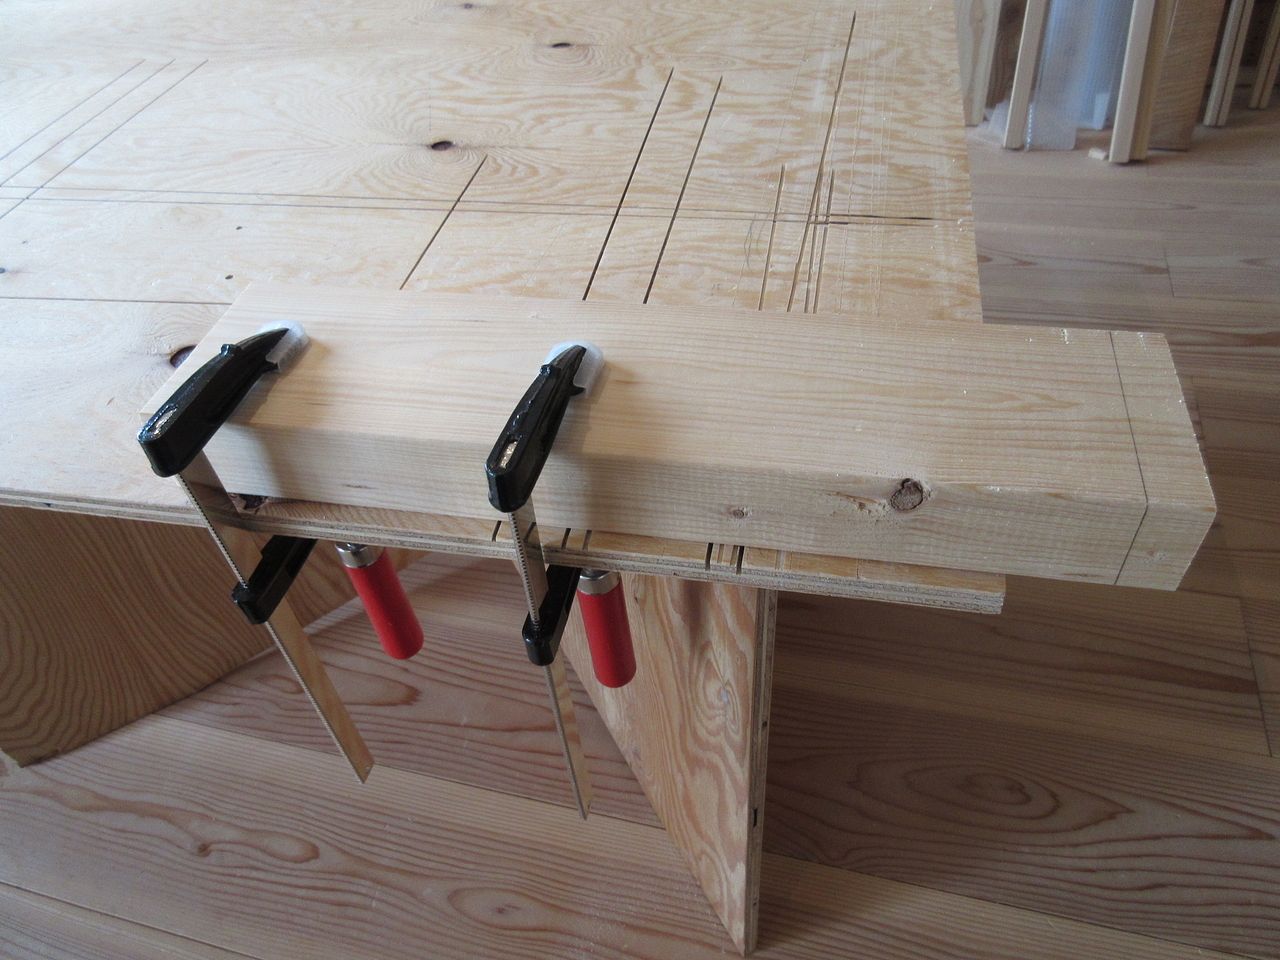 クランプを使って木材を作業台に固定しなくていいかもしれませんが、固定した方がカットしやすいので慣れないうちは固定してカットすることをおススメします。もし、クランプを使わずにカットする場合は、手などを使って木材をしっかり押さえてカットしましょう。